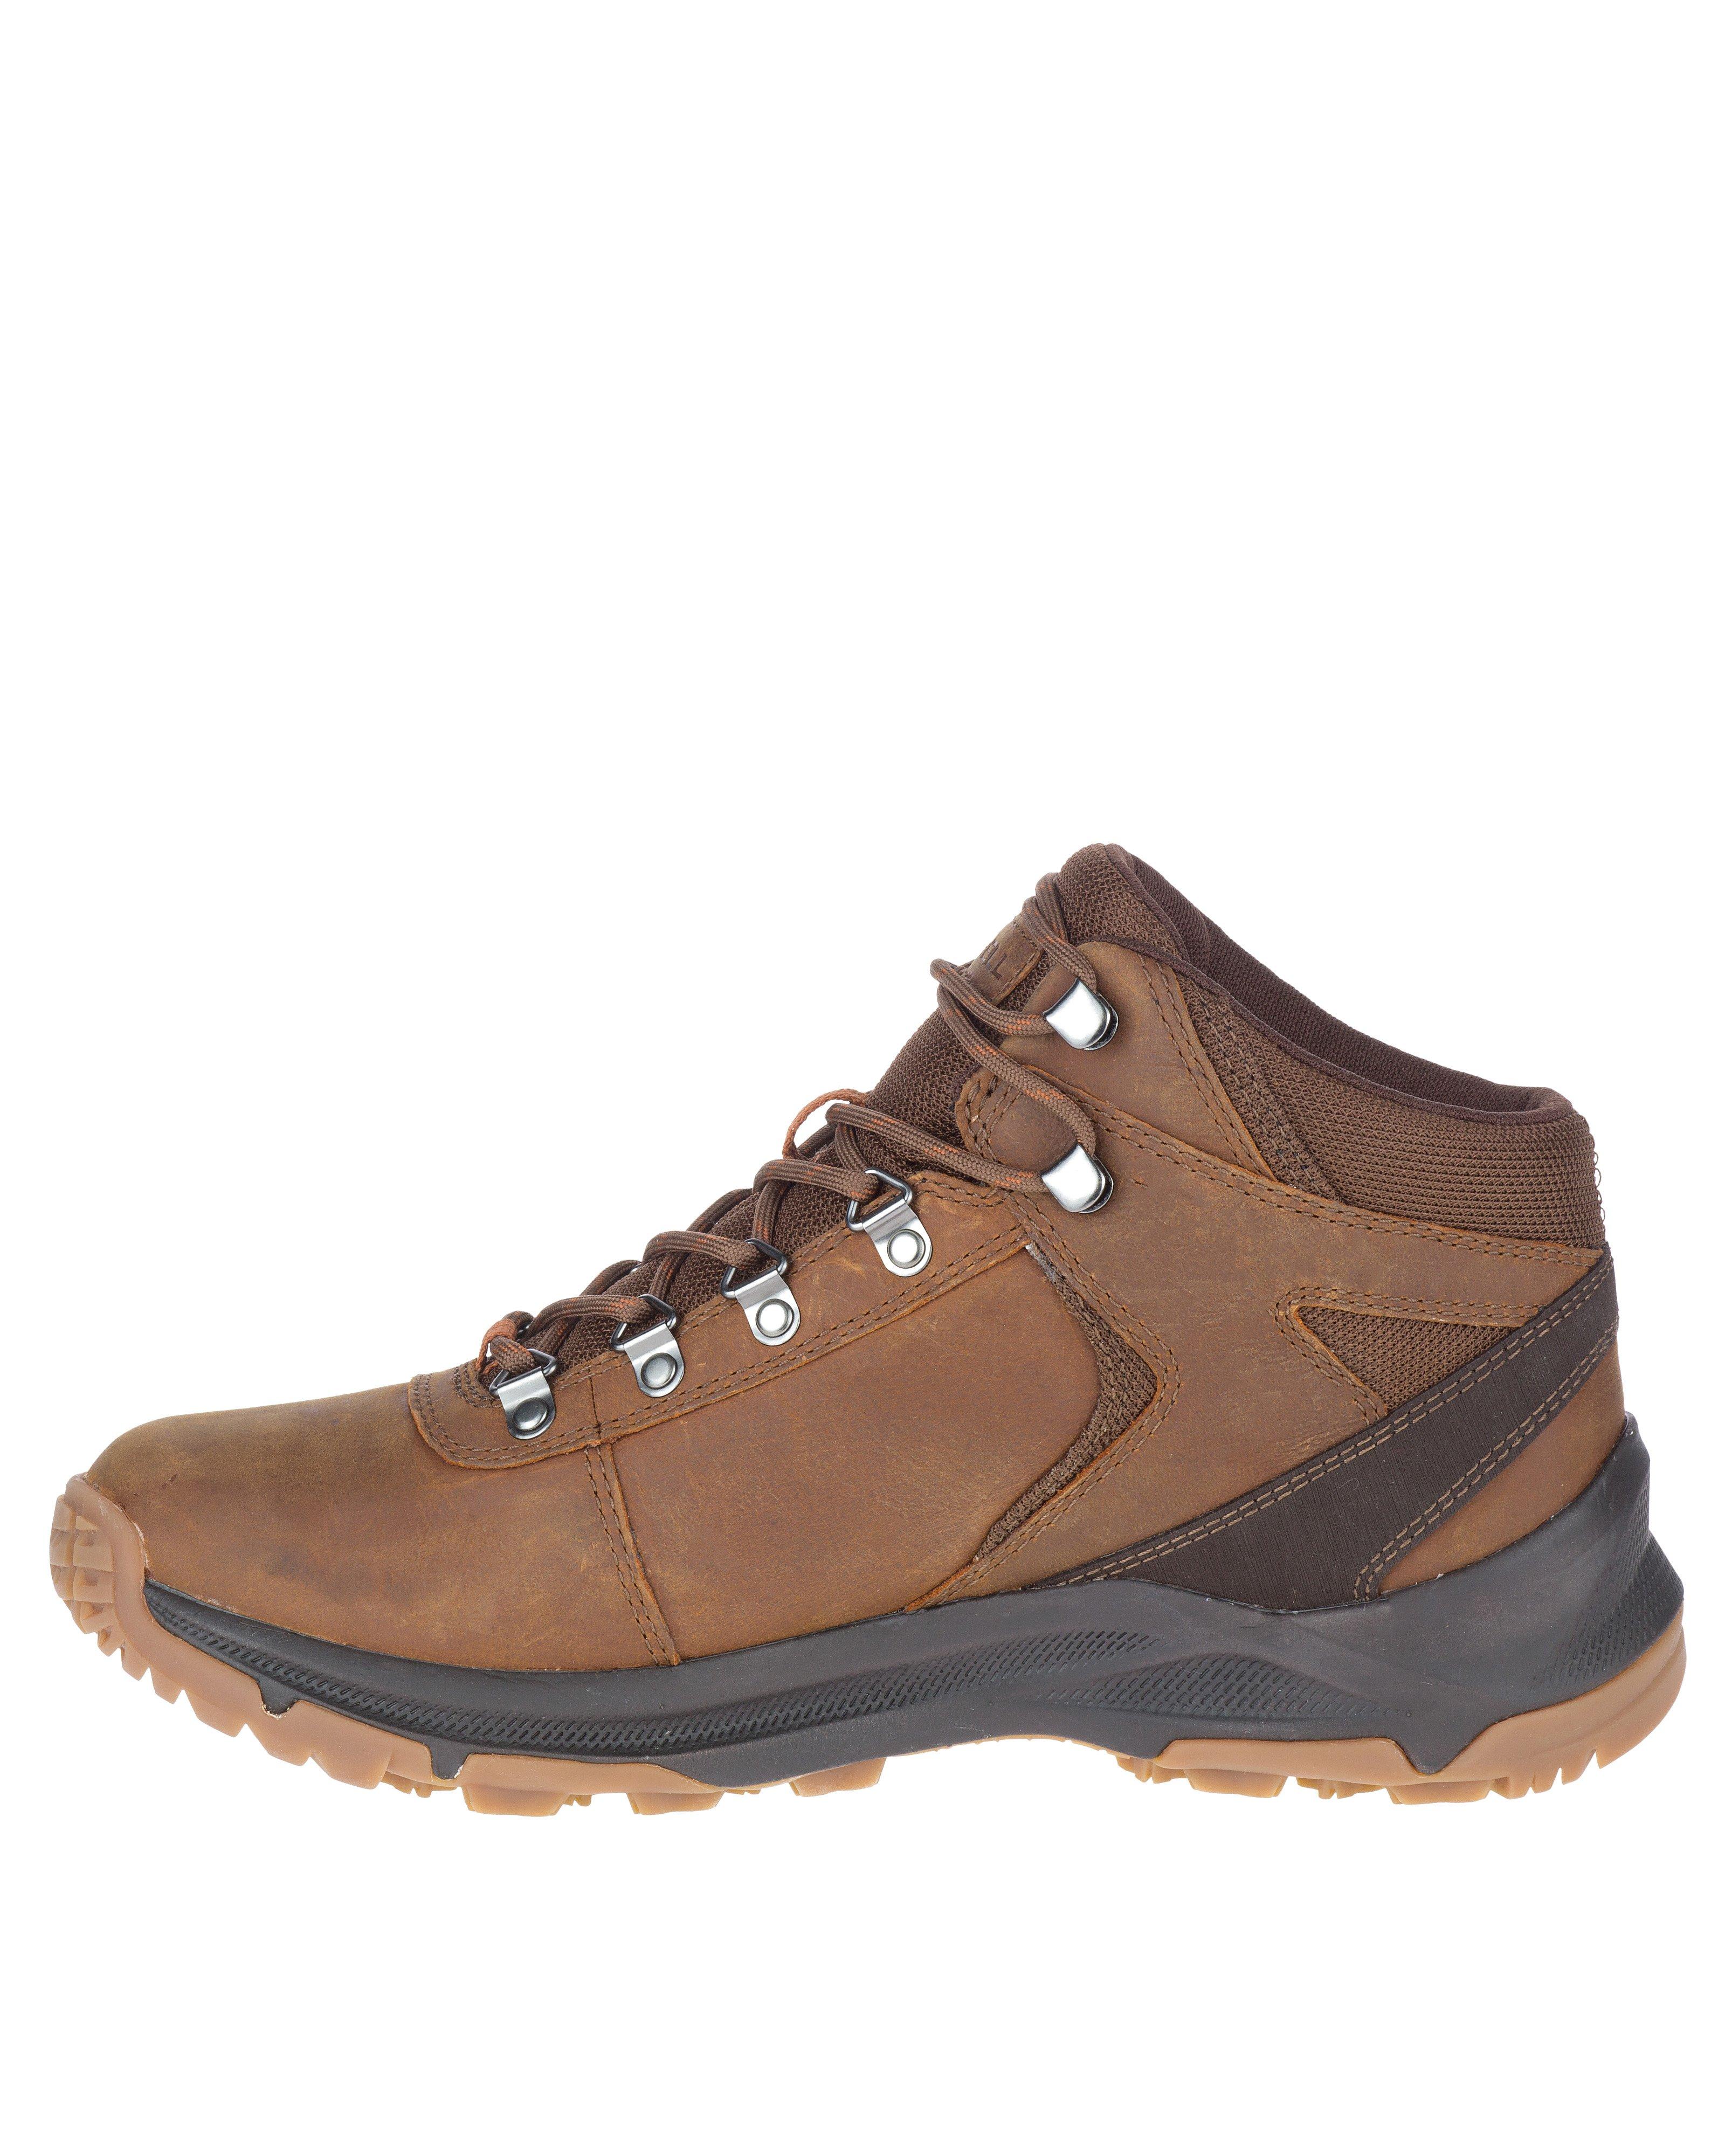 Merrell Men's Erie Waterproof Hiking Boots -  Brown